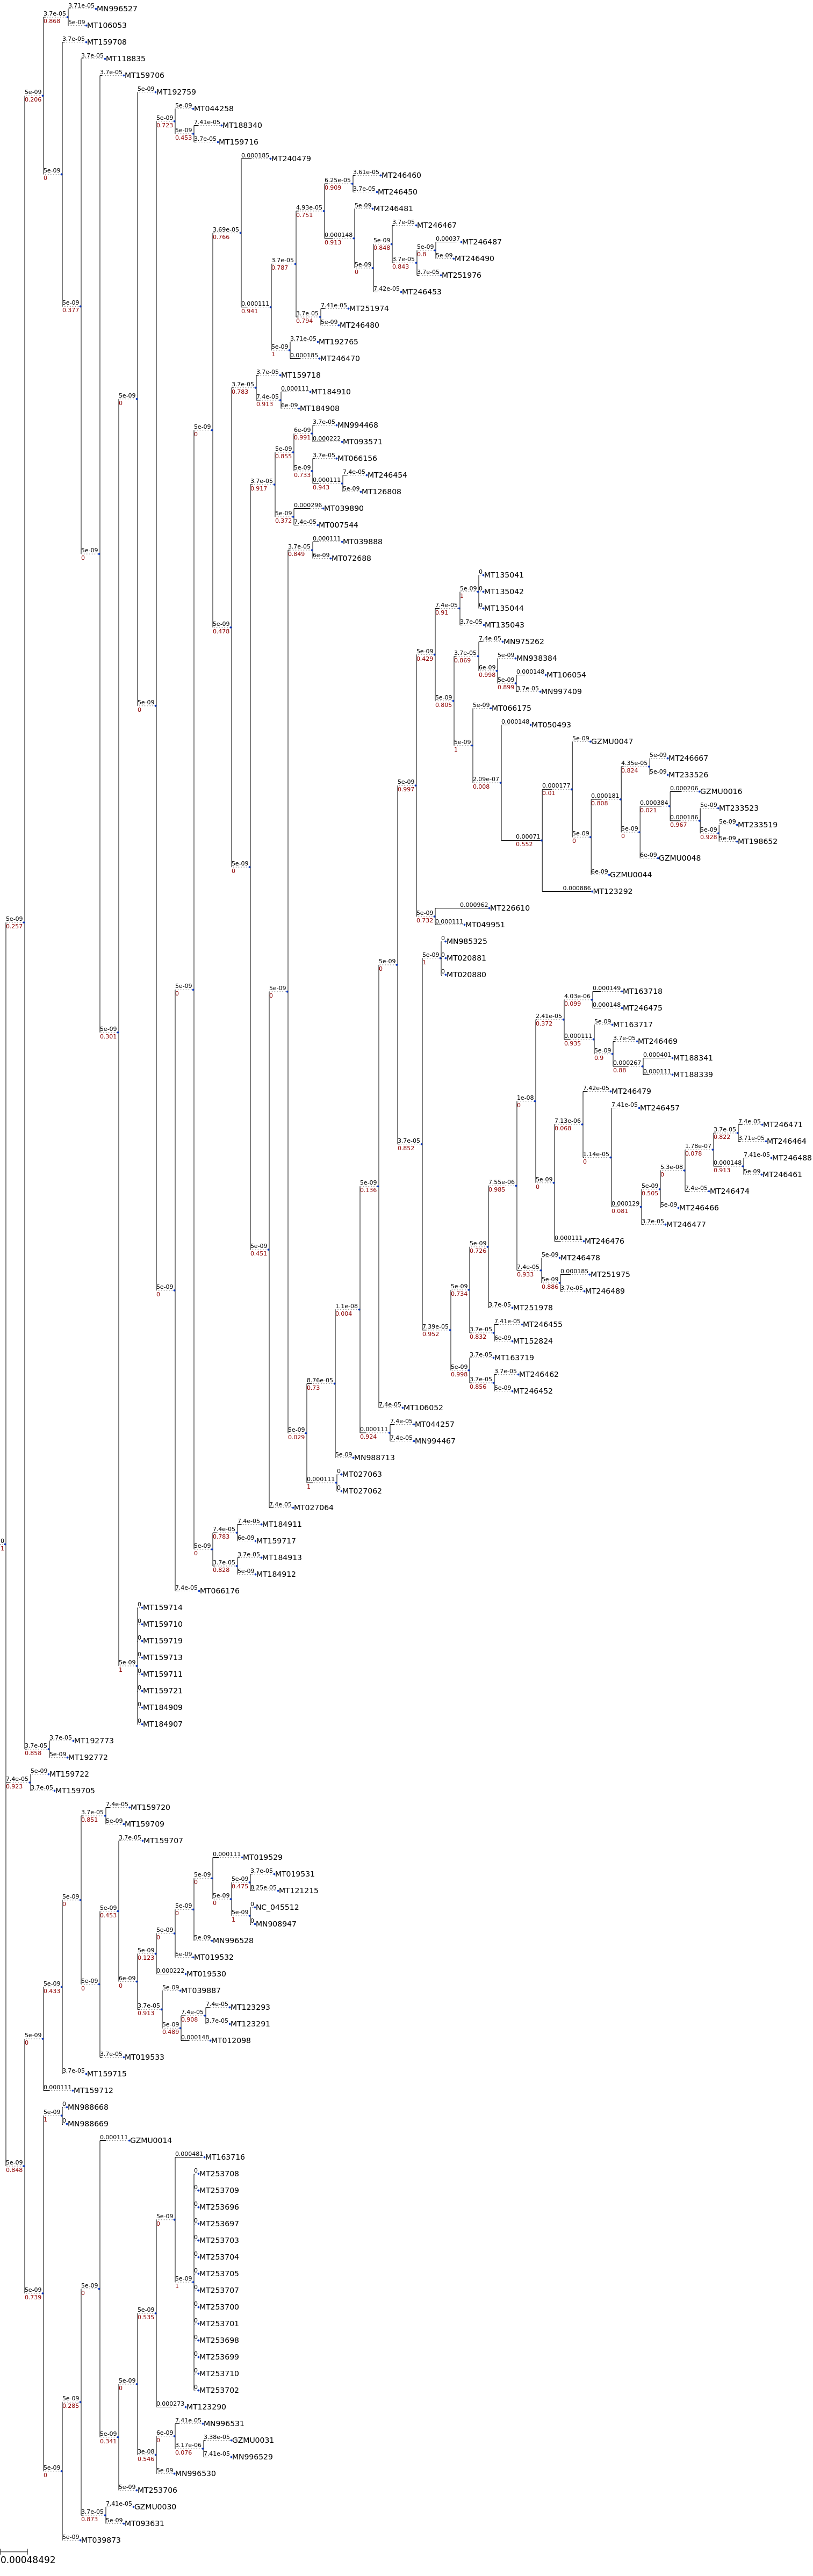 ../_images/examples_coronavirus_analysis_Tree_building_for_153_Coronavirus_genomes_10_0.png